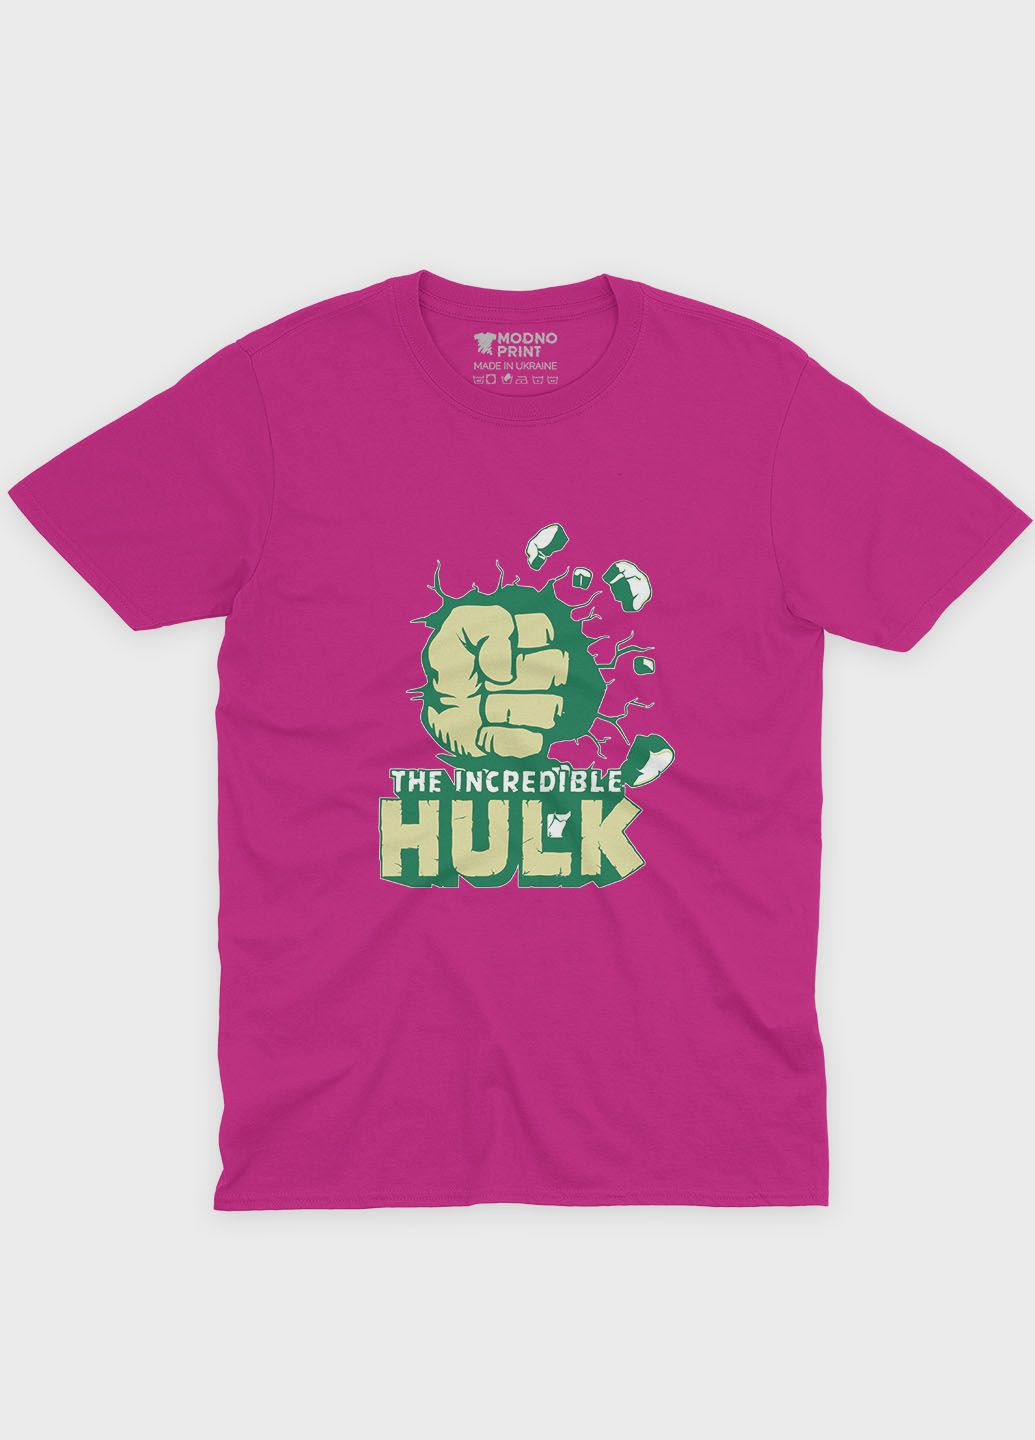 Розовая демисезонная футболка для мальчика с принтом супергероя - халк (ts001-1-fuxj-006-018-013-b) Modno